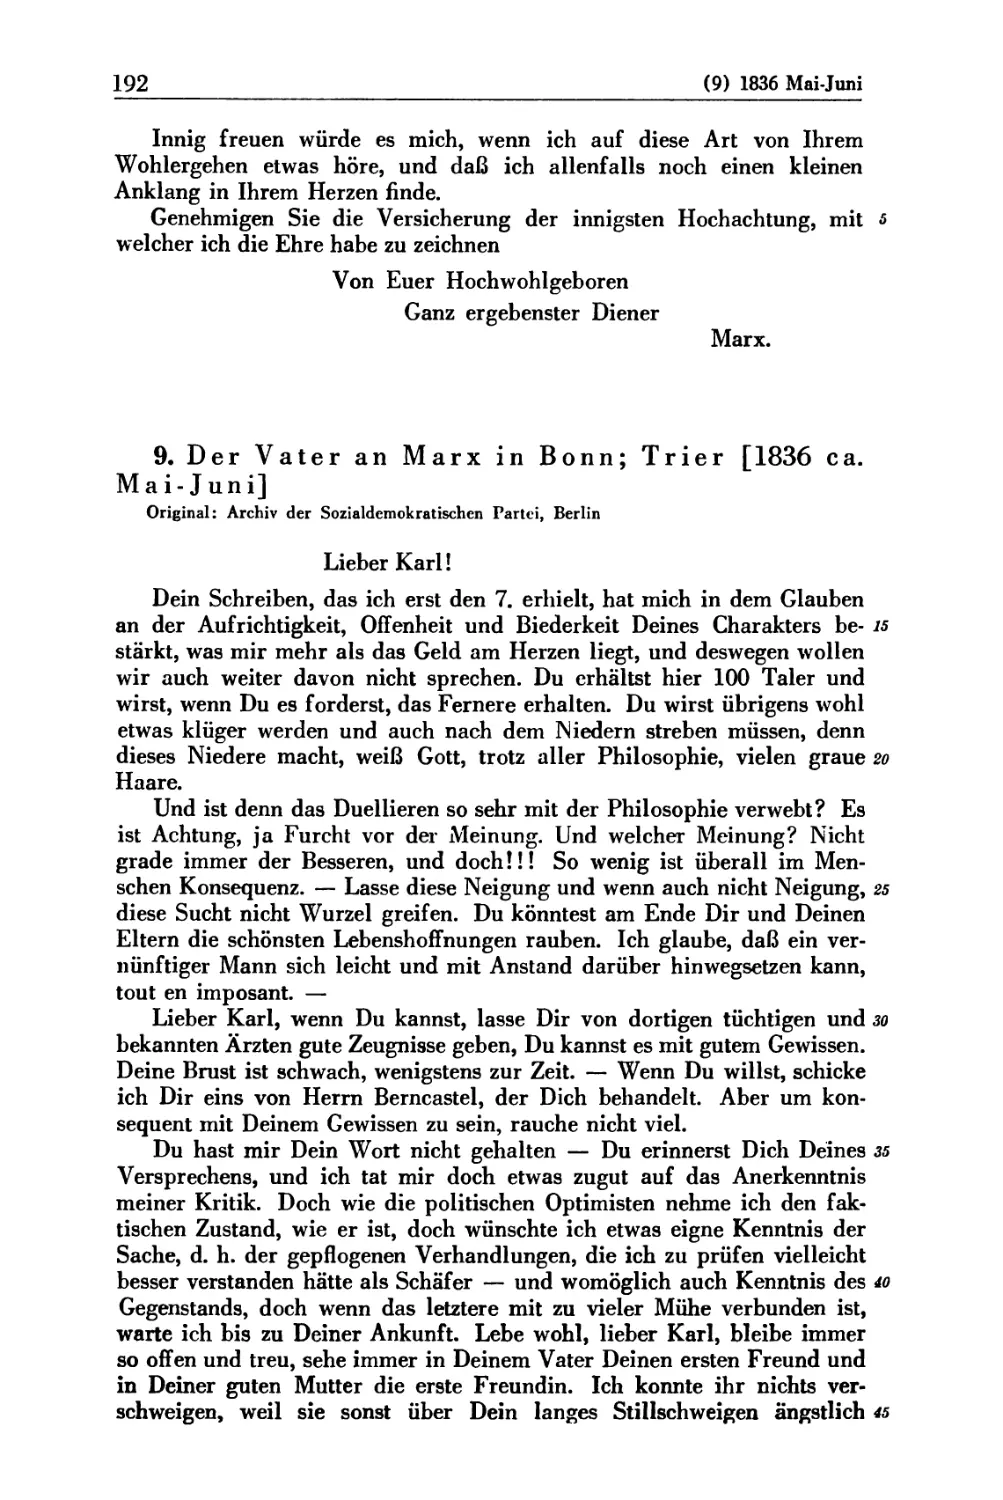 9. Der Vater an Marx in Bonn; Trier [1836 ca. Mai — Juni]